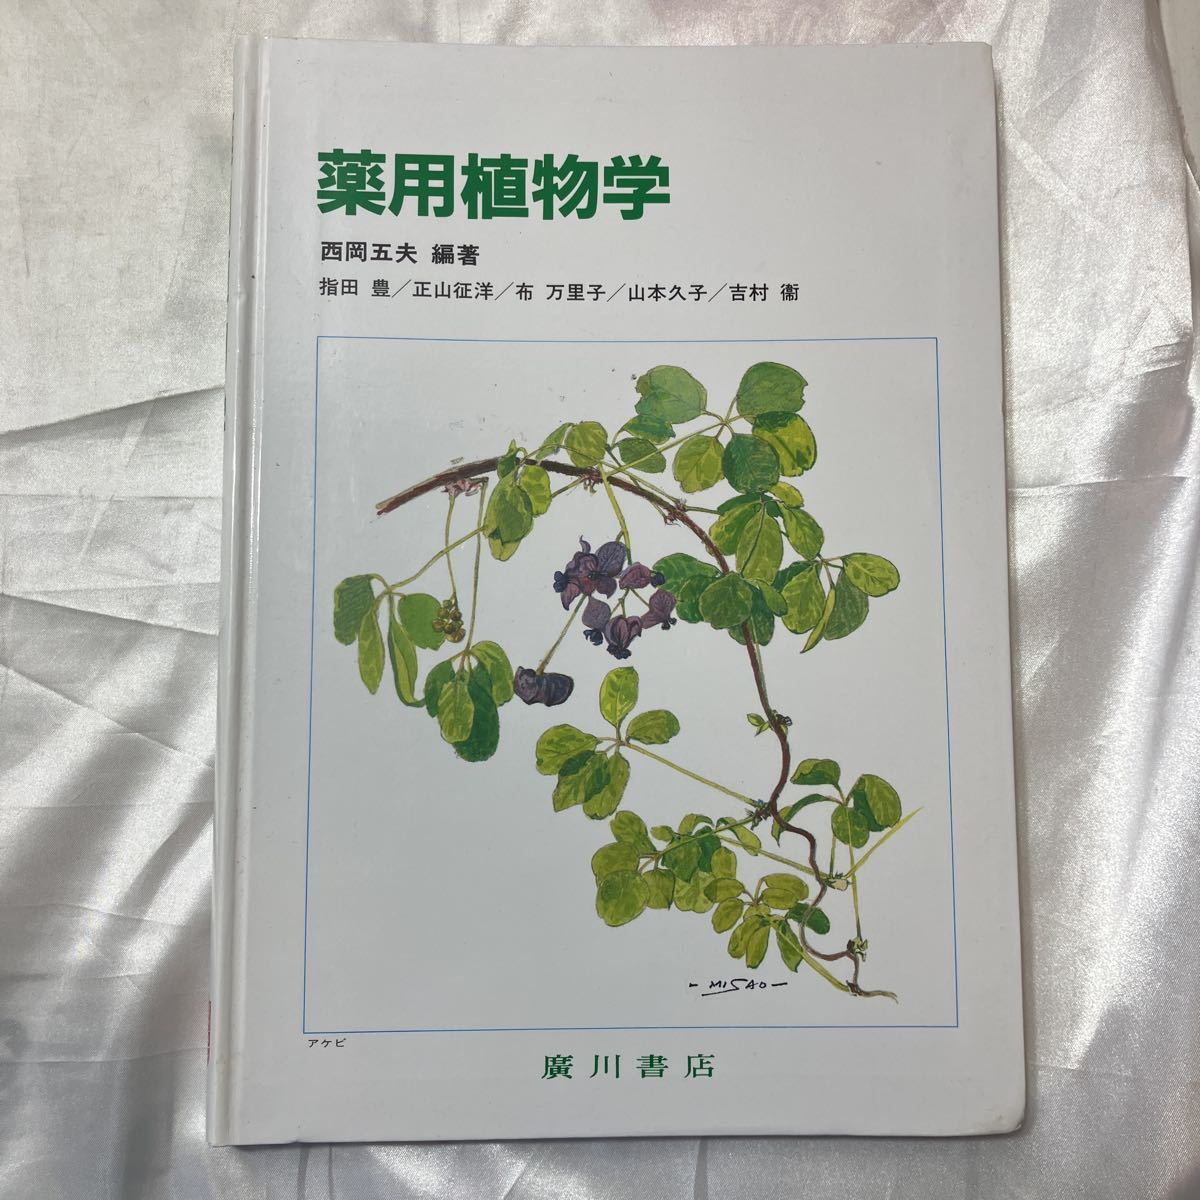 zaa-472♪薬用植物学 西岡五夫( 著 ) 廣川書店 ( 2005/8/25)_画像1